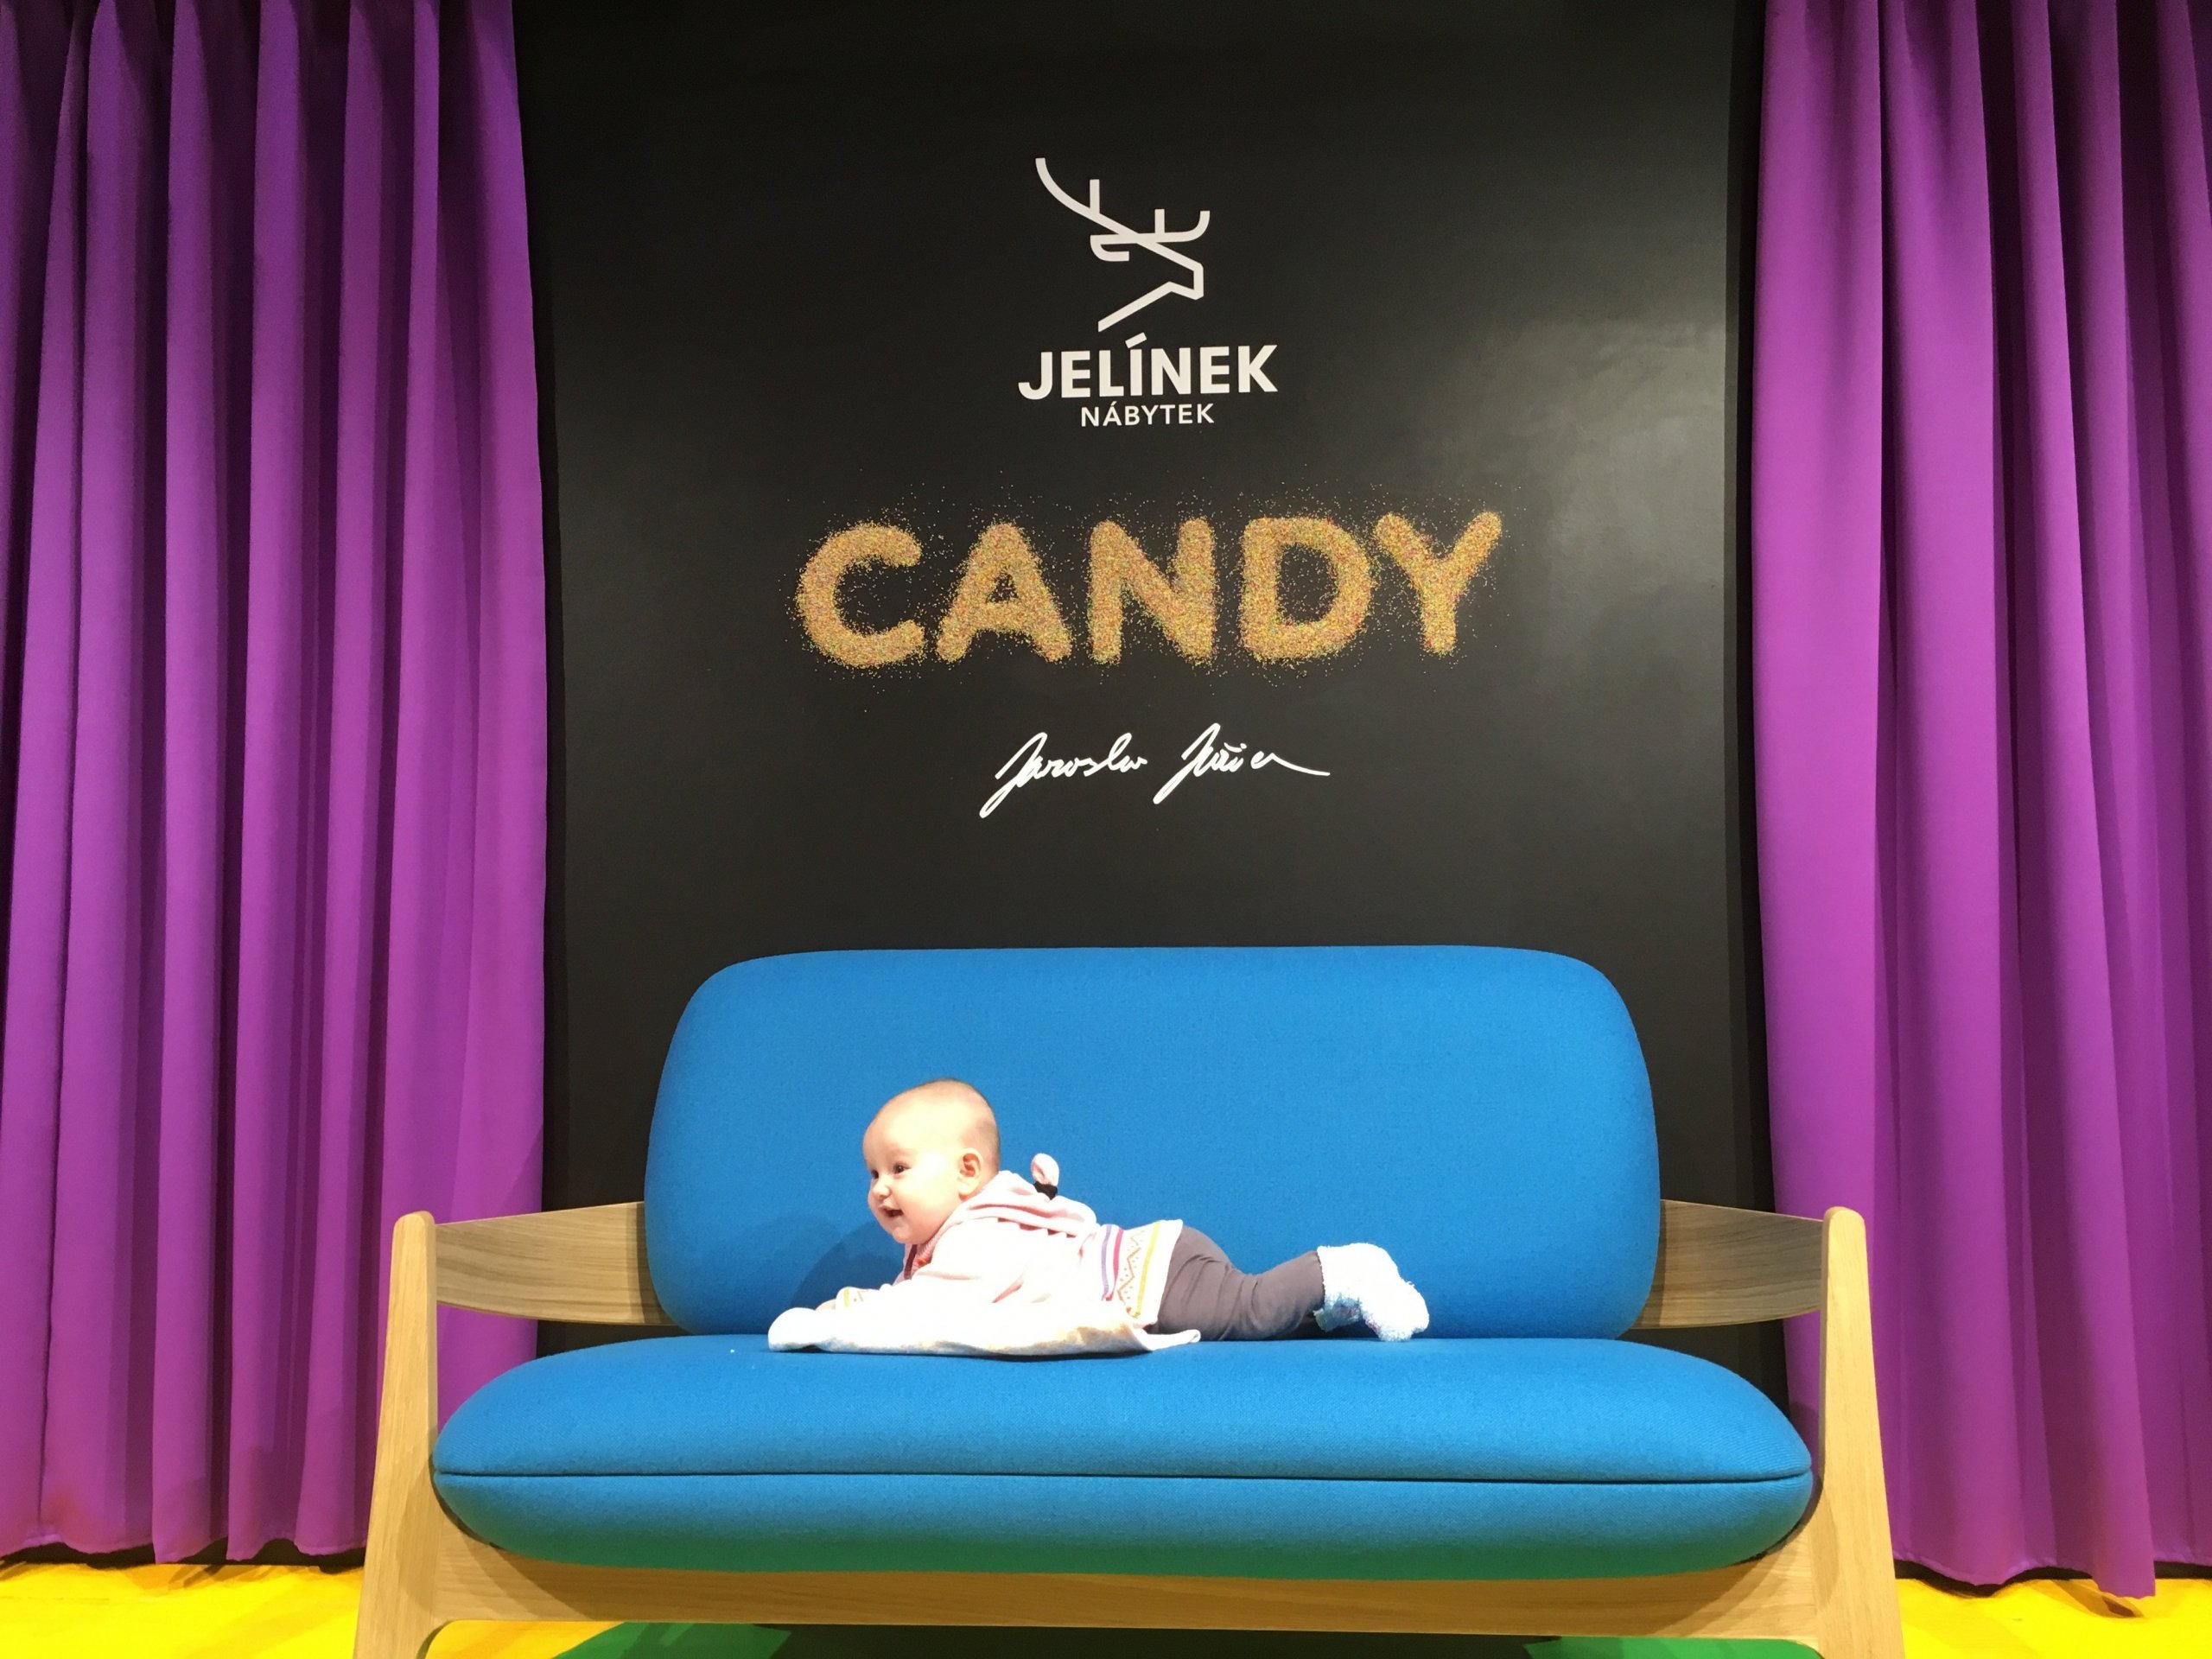 Rodinná firma Jelínek nábytek, představila kolekci Candy. Krásná, vtipná, sladká.  